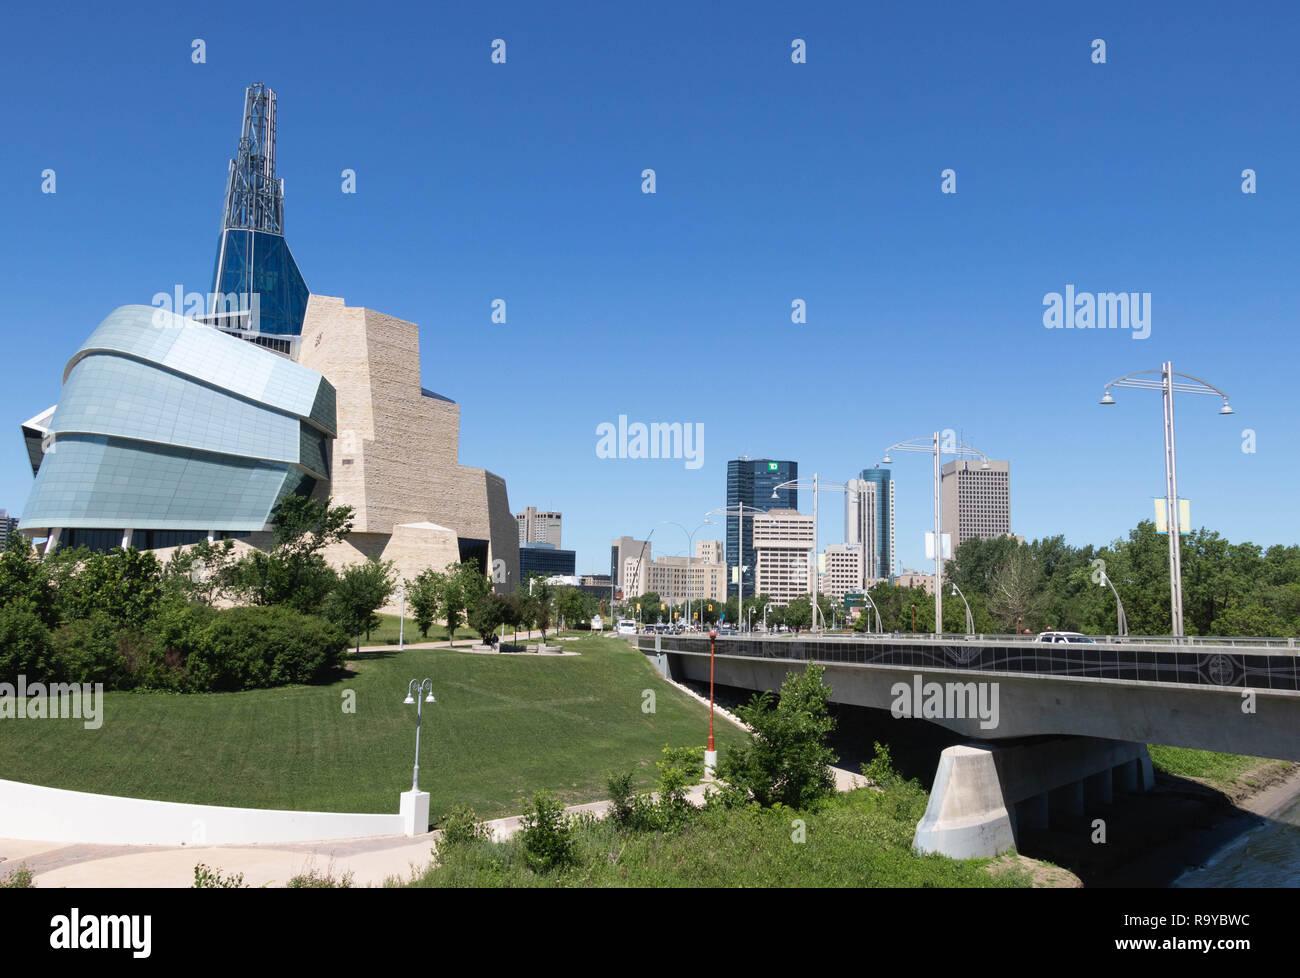 Le Musée canadien des droits de l'Homme - Winnipeg, Manitoba, Canada. Cityscape en été avec architecture futuriste Banque D'Images